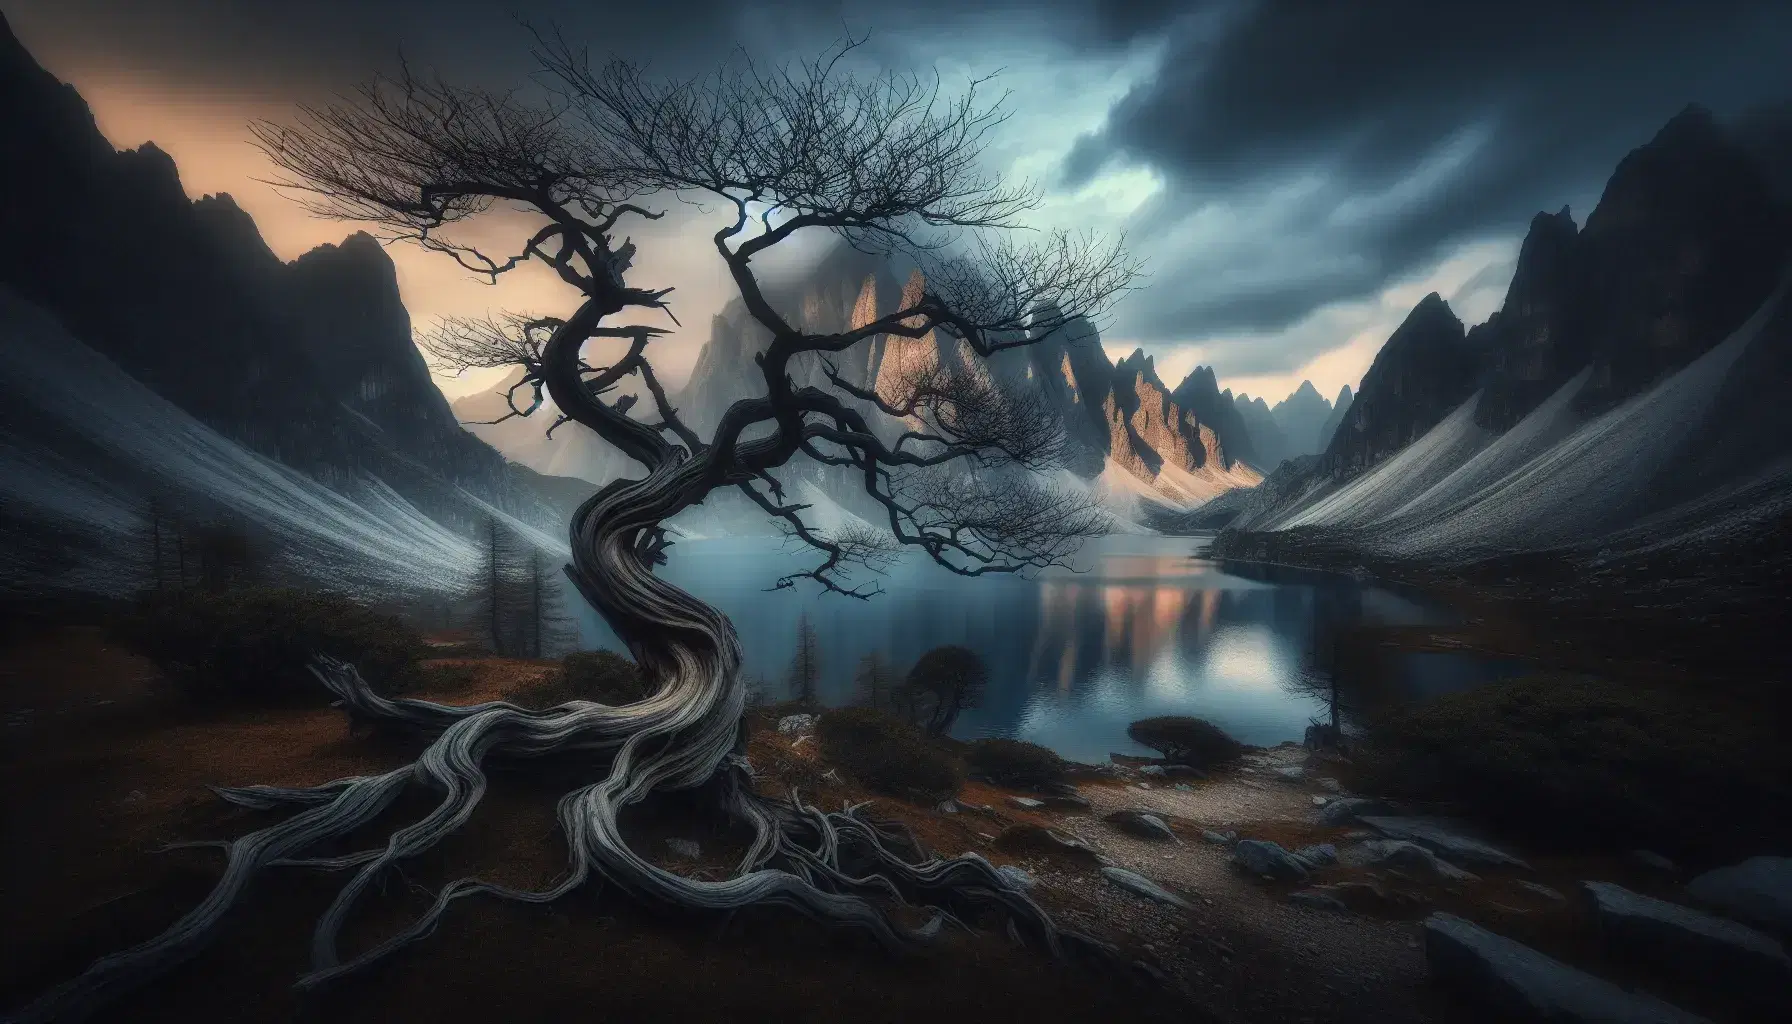 Paisaje romántico con árbol desnudo y retorcido en primer plano, lago sereno y montañas neblinosas al fondo, y figura solitaria en atuendo del siglo XIX contemplando la escena.